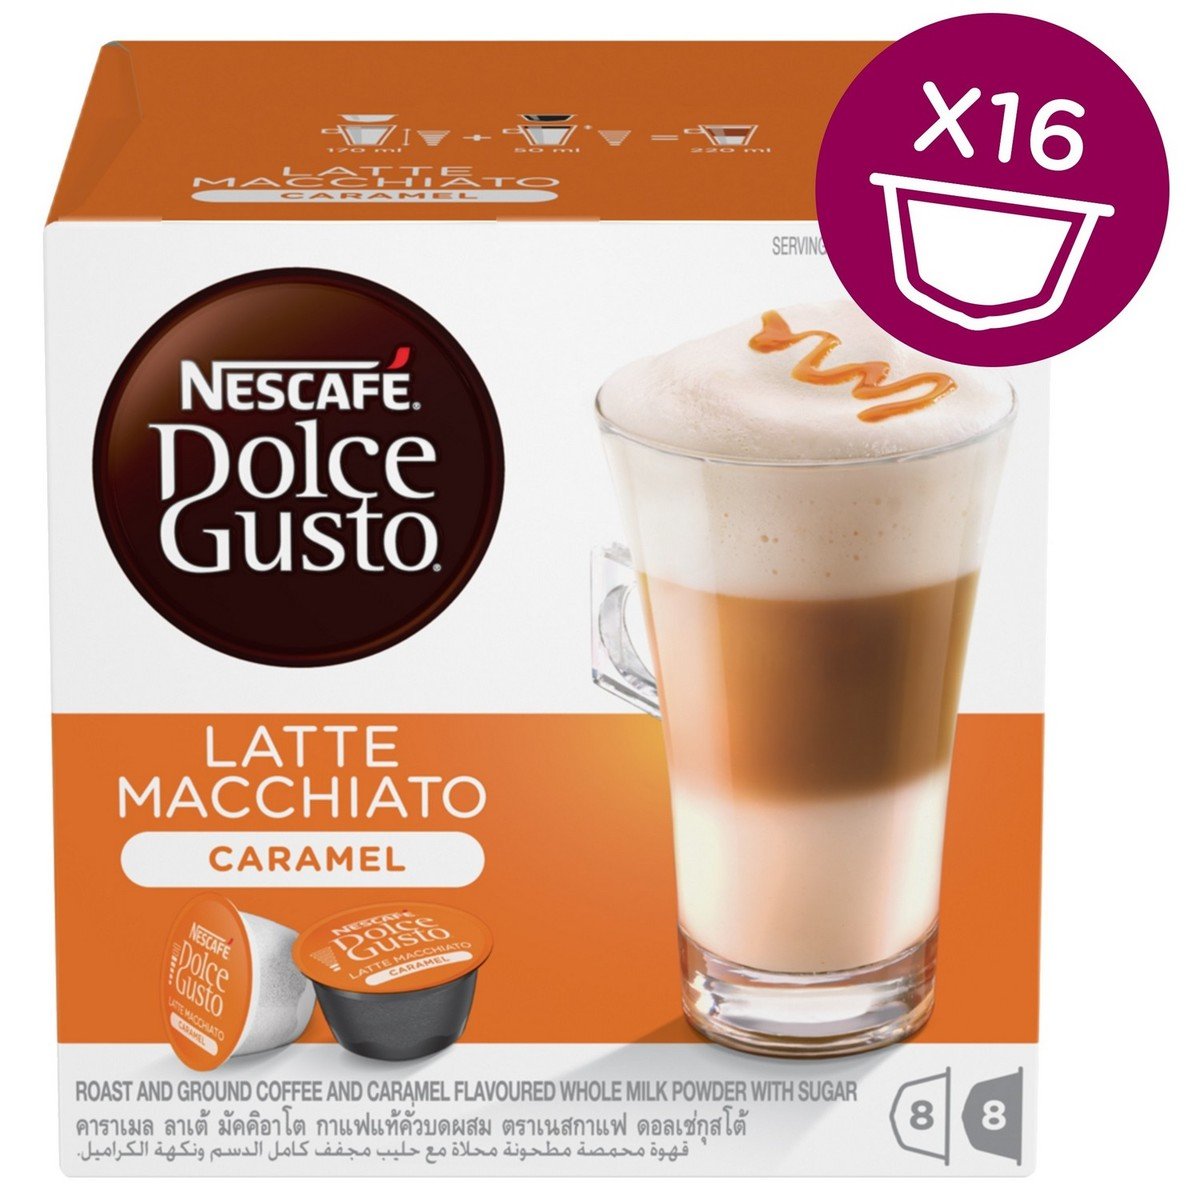 Nescafe Dolce Gusto Caramel Latte Macchiato Coffee Capsules 16 pcs